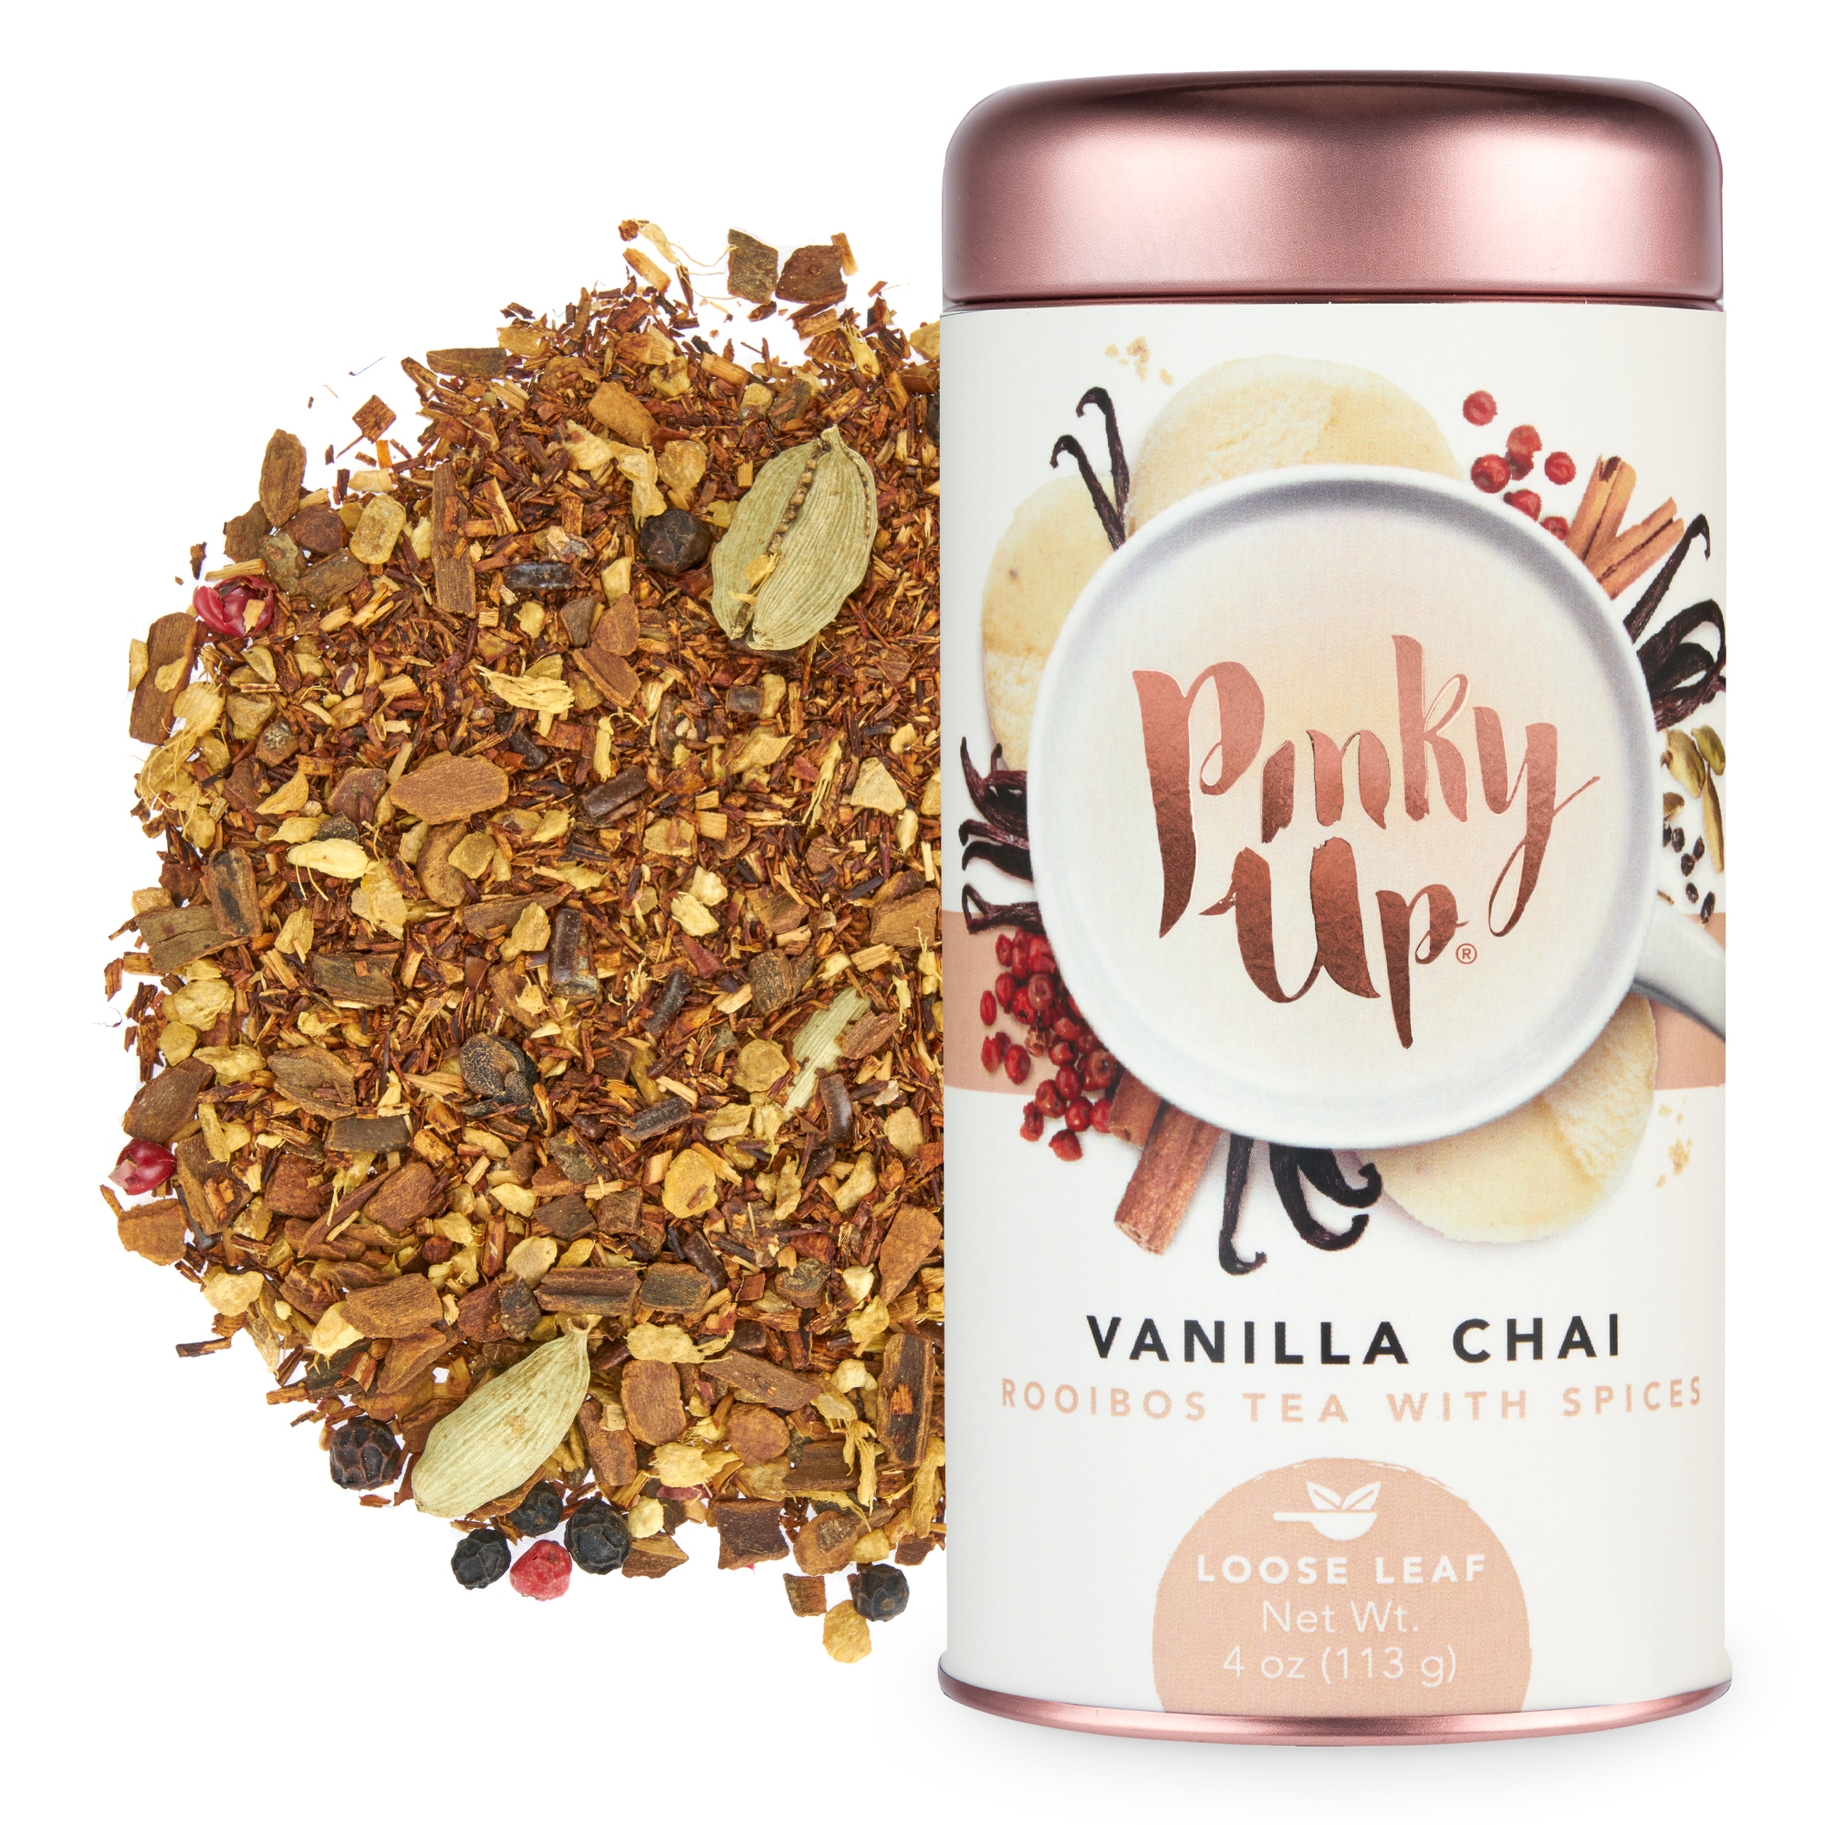 Pinky Up - Wholesale Loose Tea - Vanilla Chai Loose Leaf Tea on Faire.com